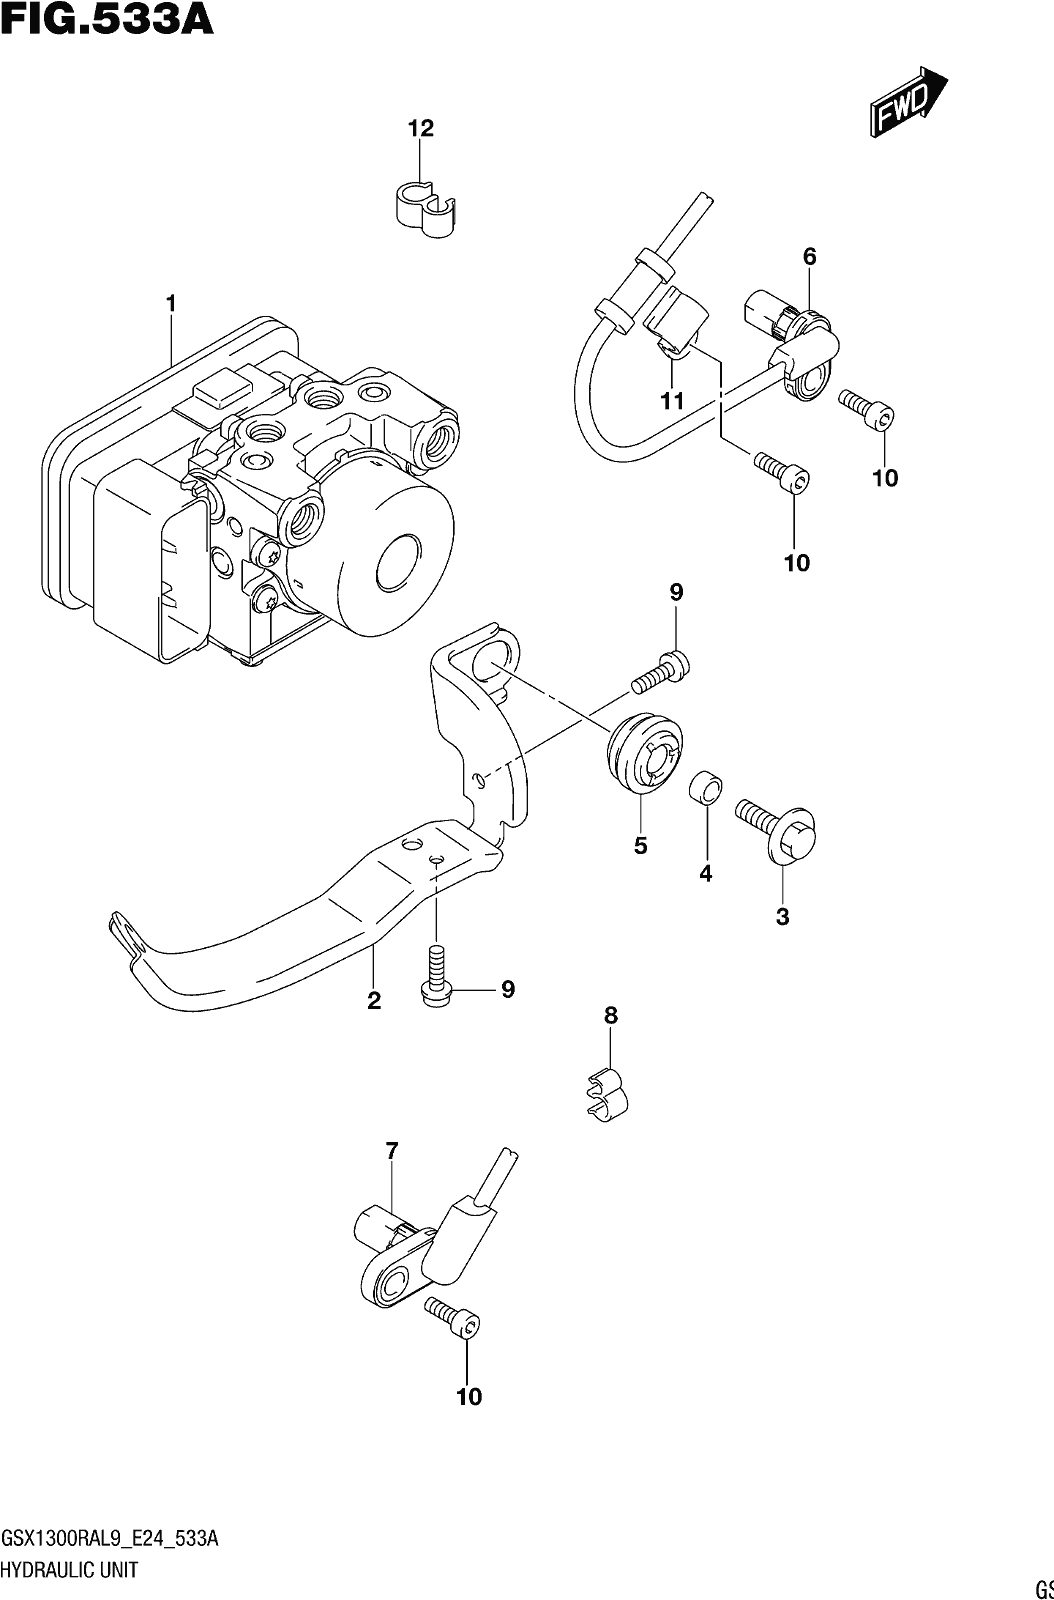 Fig.533a Hydraulic Unit